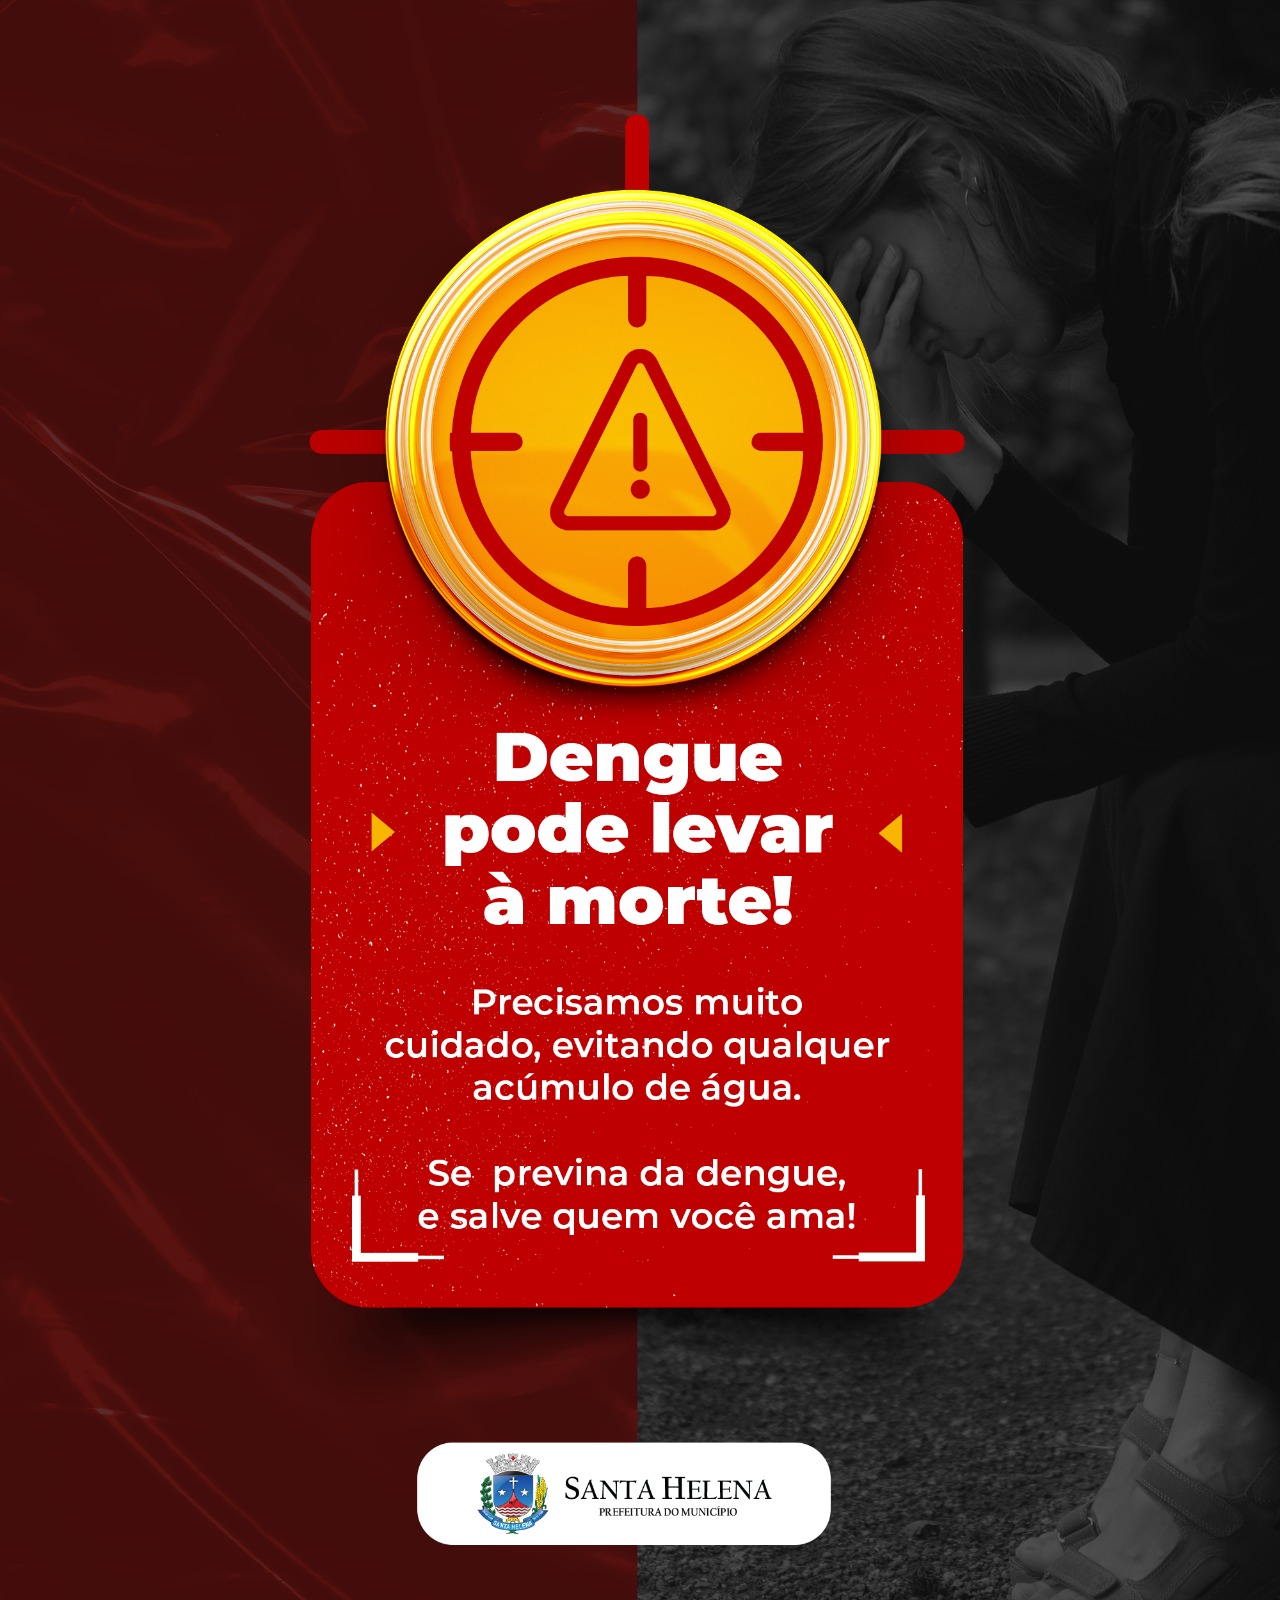 Epidemia de Dengue em Santa Helena: Alerta Vermelho! 🚨